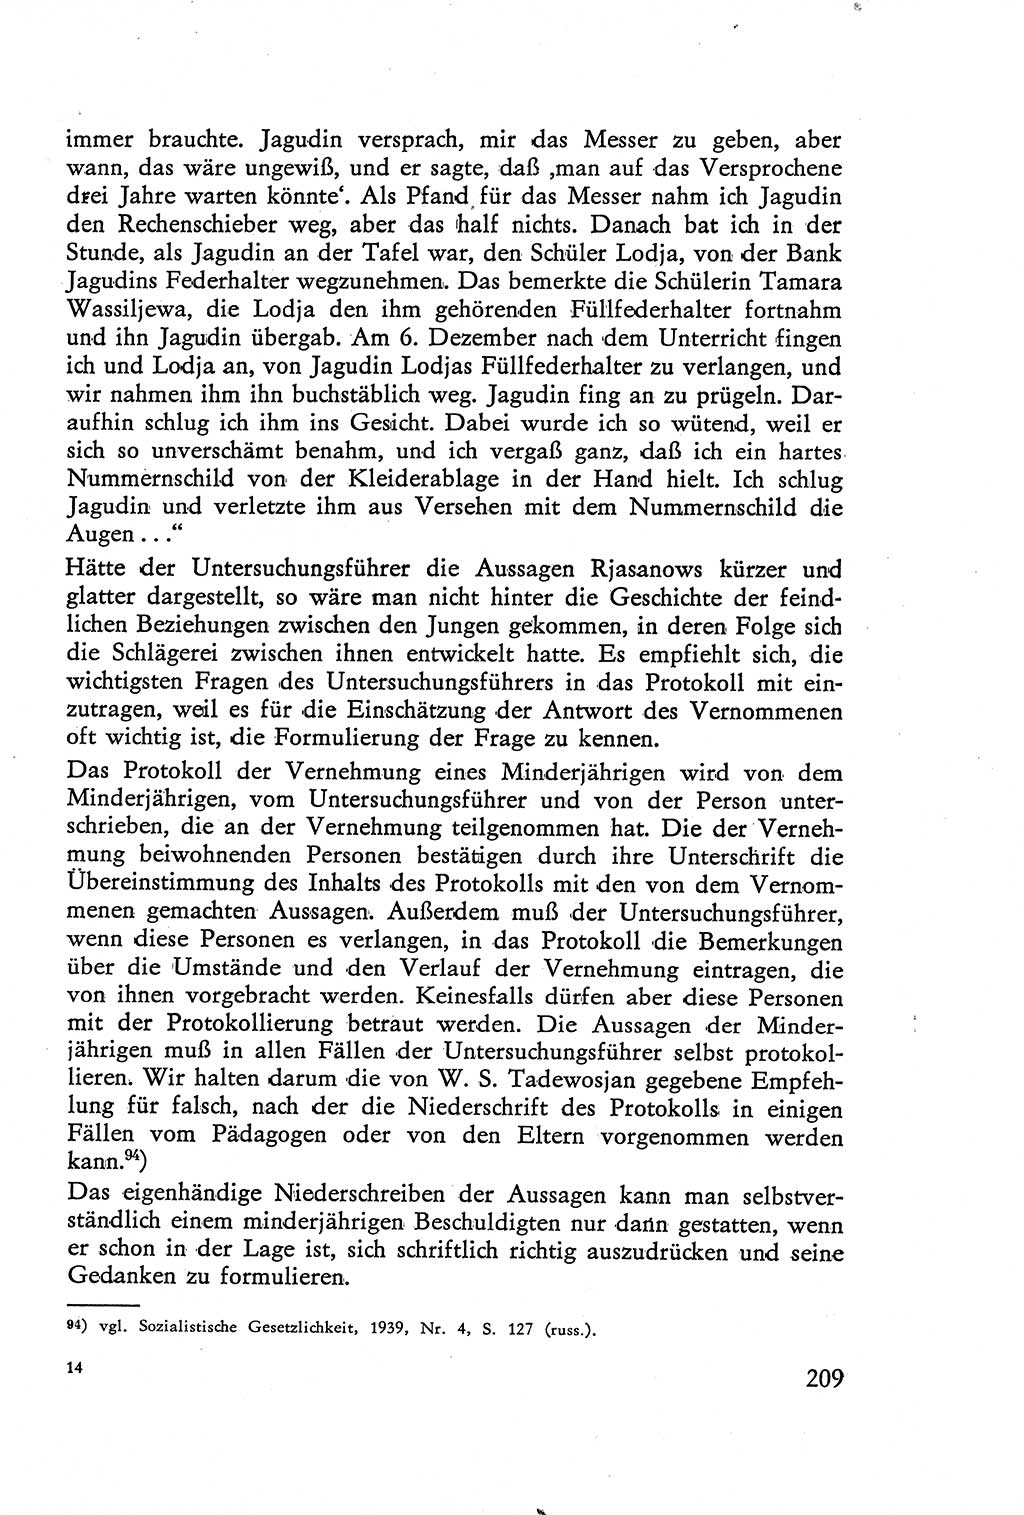 Die Vernehmung [Deutsche Demokratische Republik (DDR)] 1960, Seite 209 (Vern. DDR 1960, S. 209)